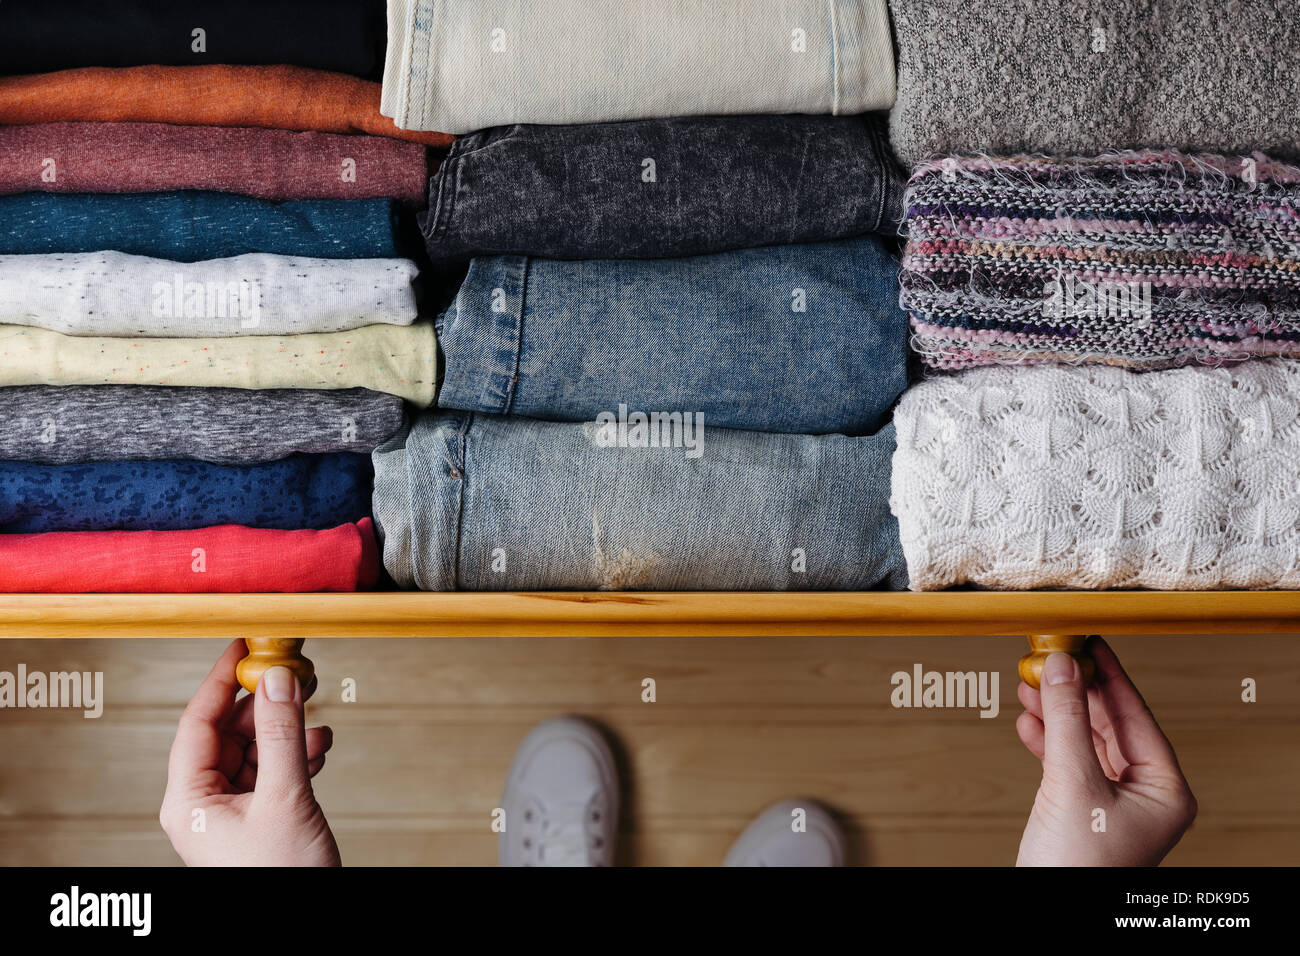 Fotografía cenital de ropa ordenado en el cajón de madera. Mujer organizar la ropa en el cajón Foto de stock